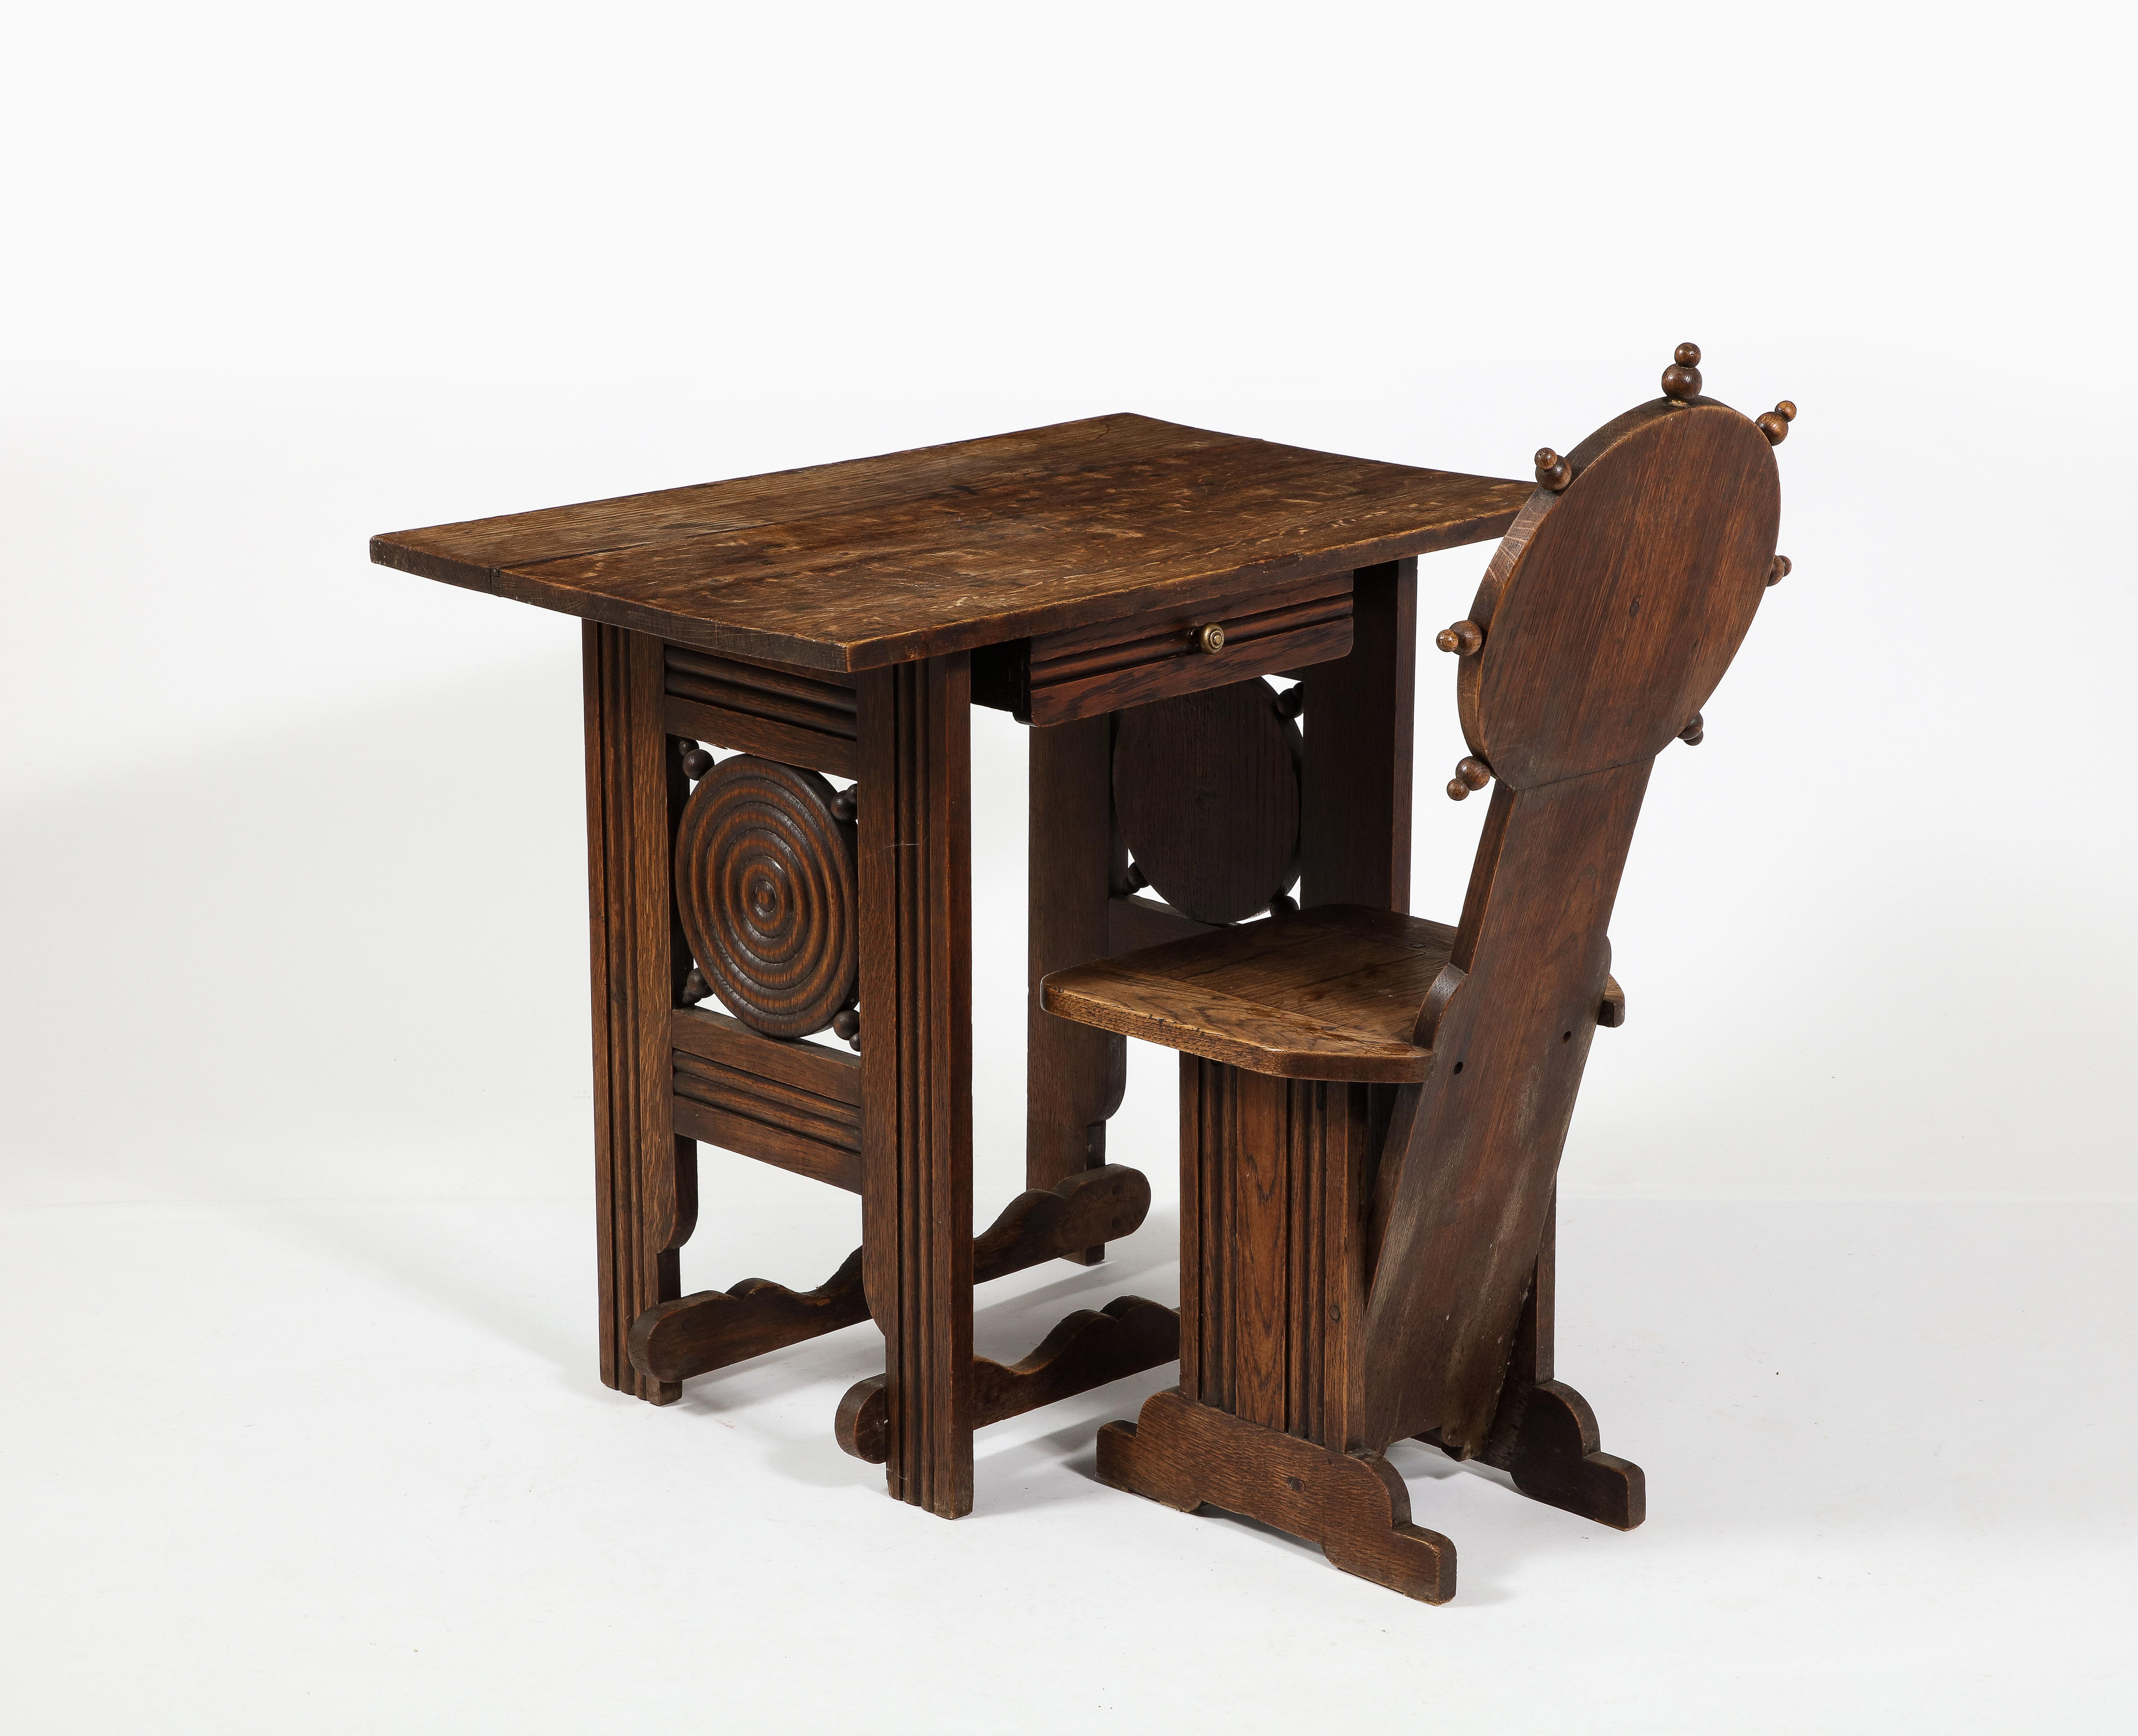 Schreibtisch en suite mit passendem Stuhl, handgeschnitzter Nussbaum mit vielen Details.



Schreibtisch 28x21.5x31.5
Stuhl 33x16x15